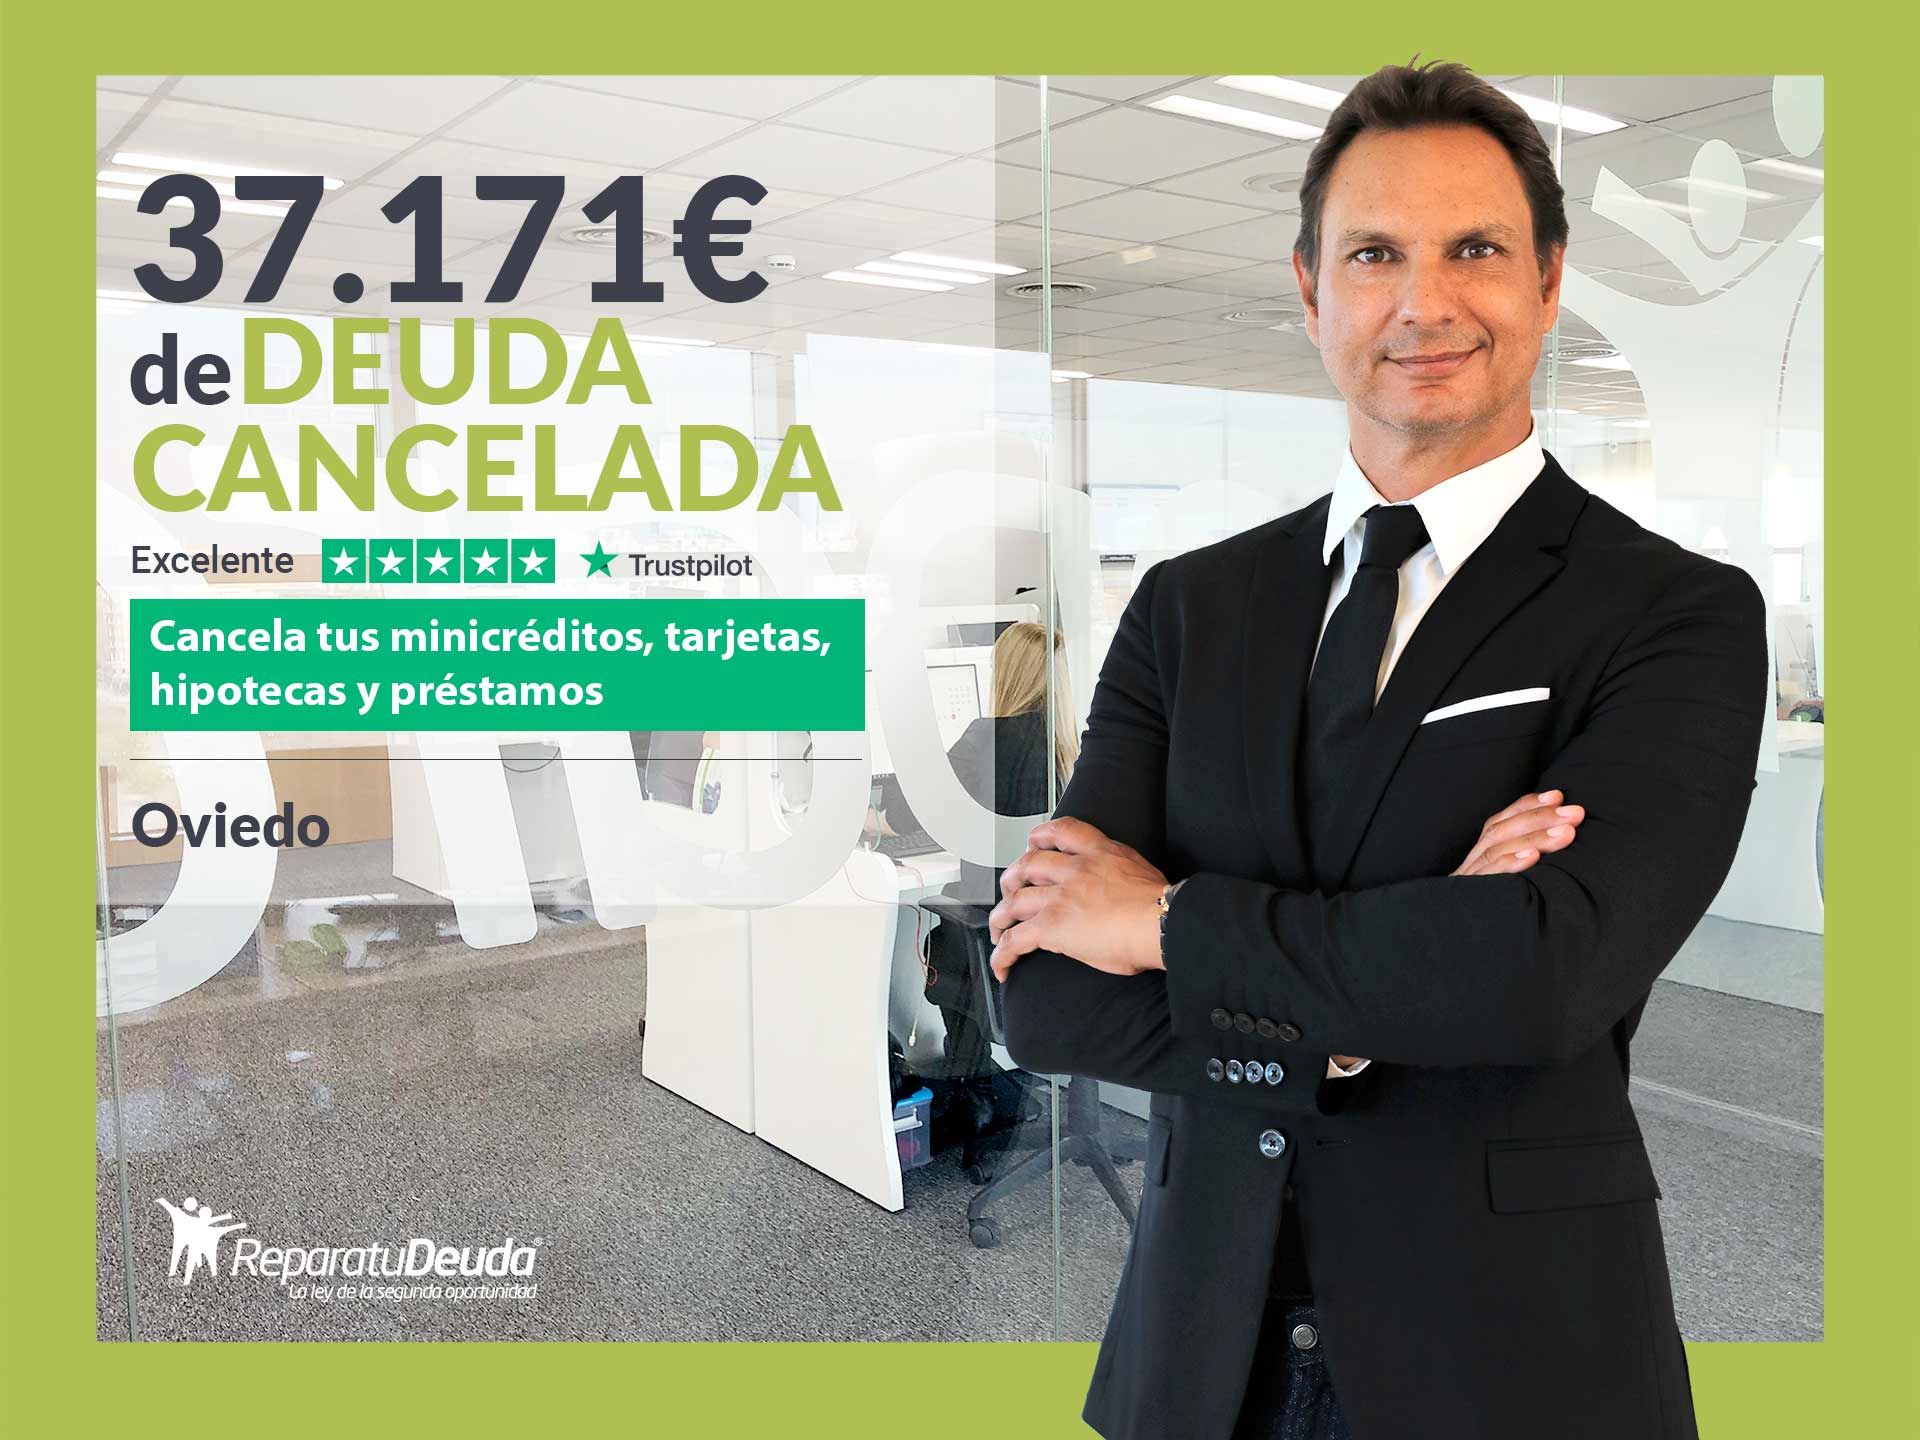 Repara tu Deuda Abogados cancela 37.171? en Oviedo (Asturias) con la Ley de Segunda Oportunidad